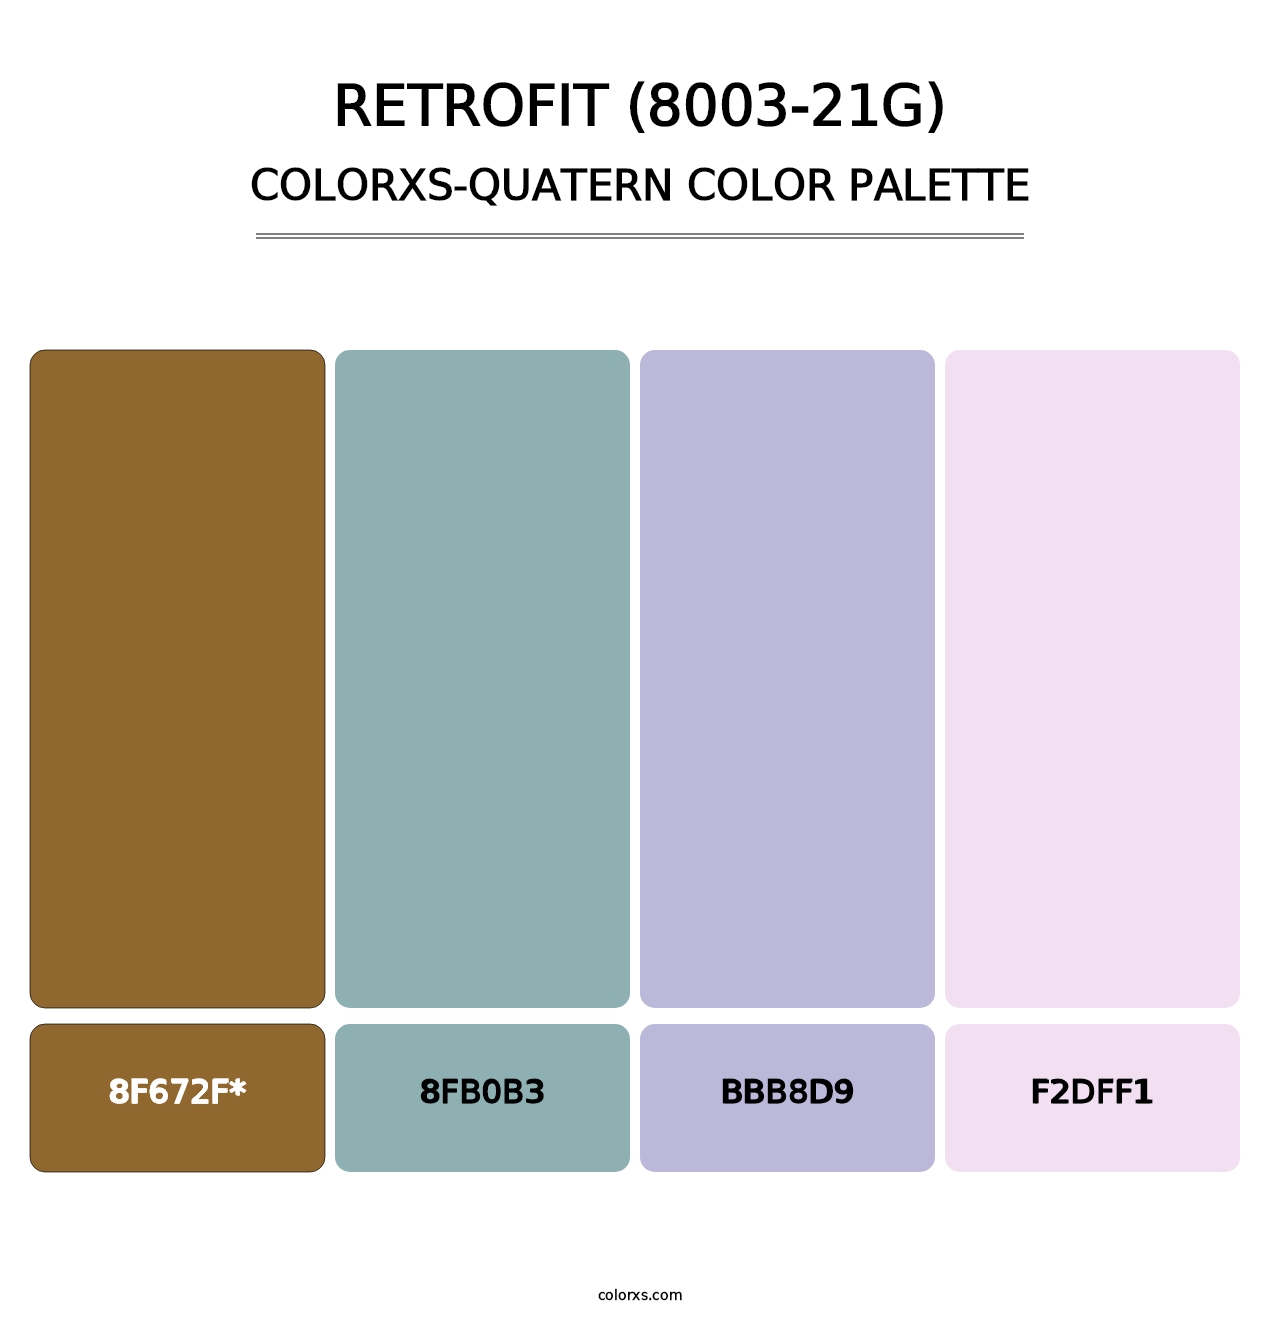 Retrofit (8003-21G) - Colorxs Quatern Palette